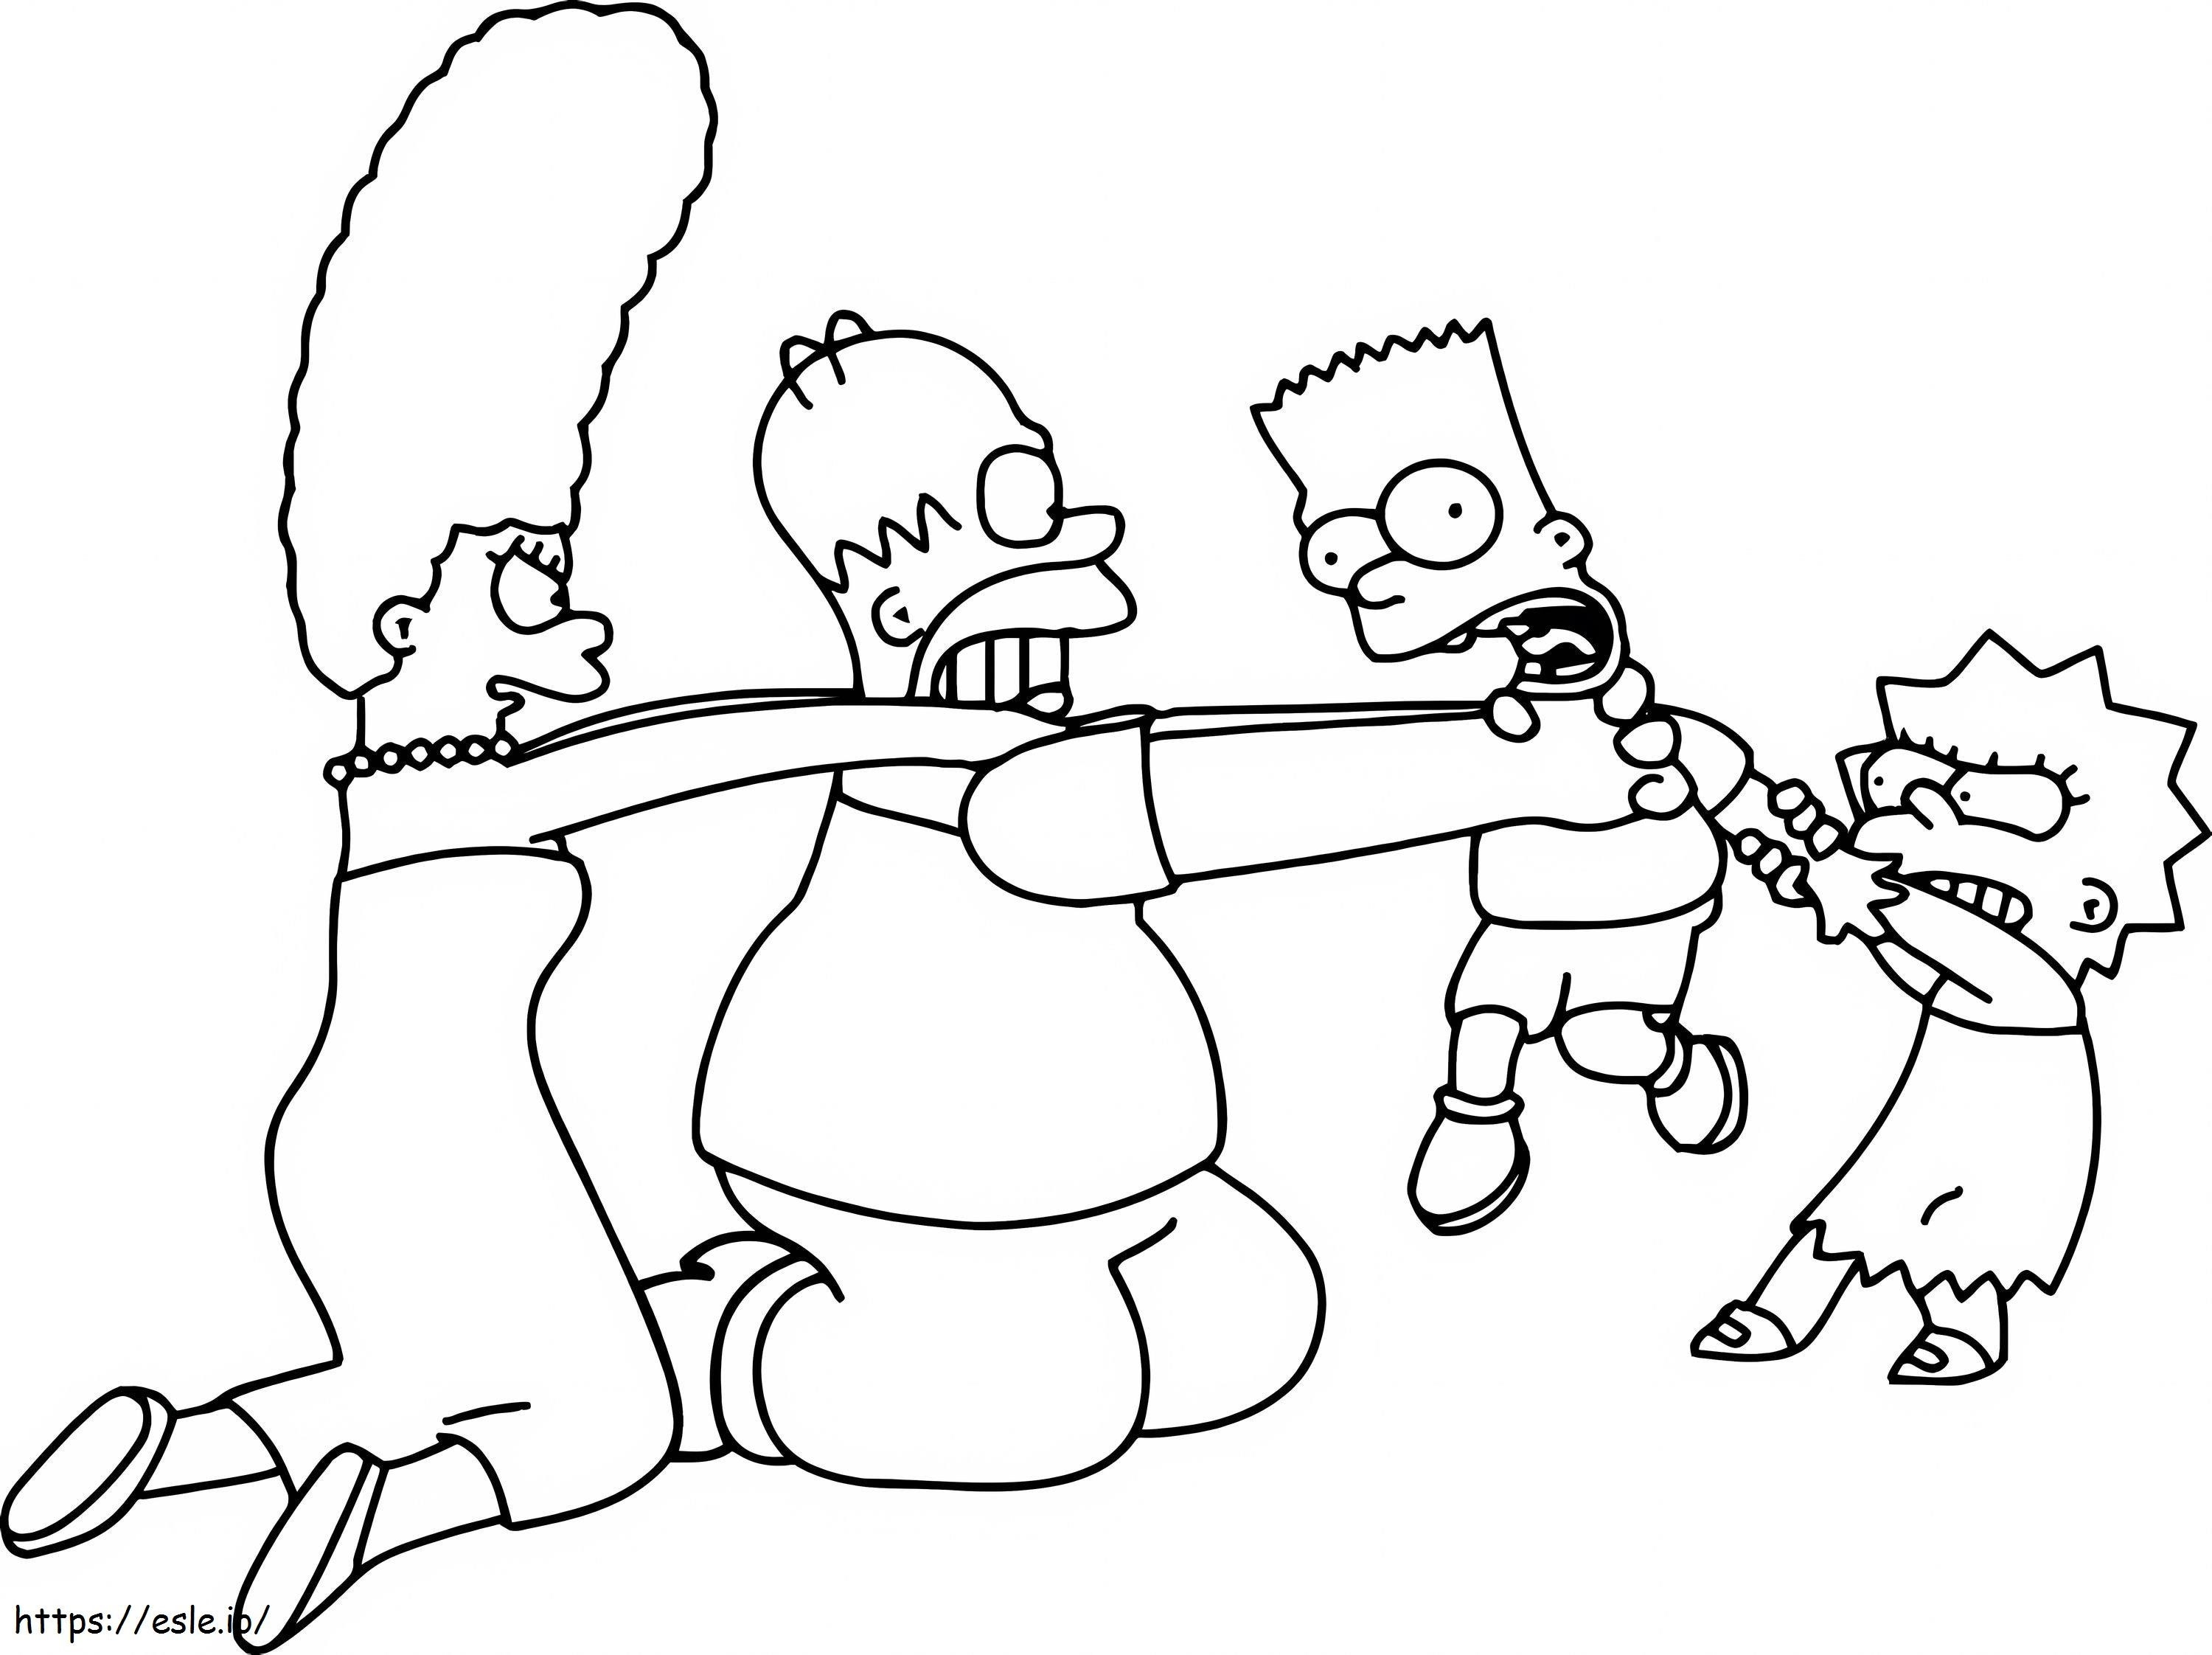 Coloriage La famille Simpson s'amuse à imprimer dessin